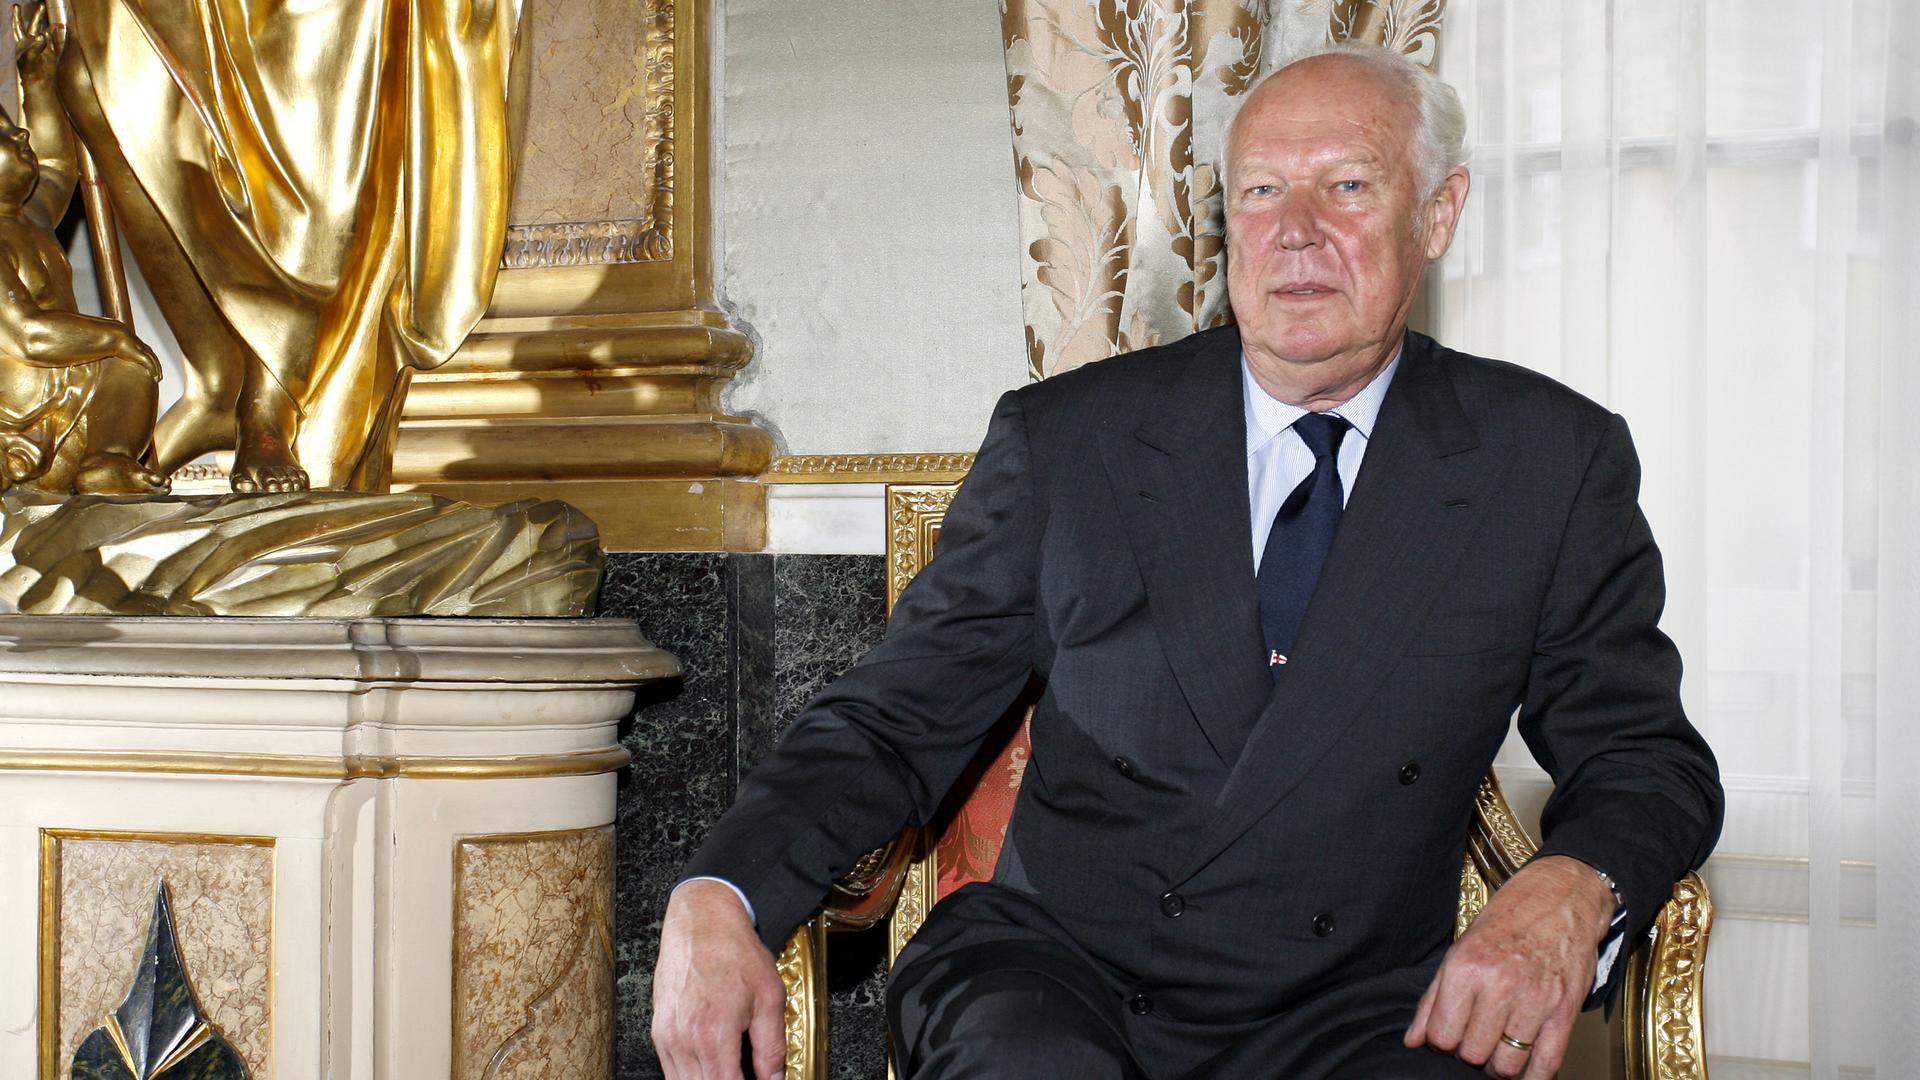 Victor Emanuel von Syvoyen im Jahr 2006. Er sitzt in einem goldenen Stuhl neben einer Säule.